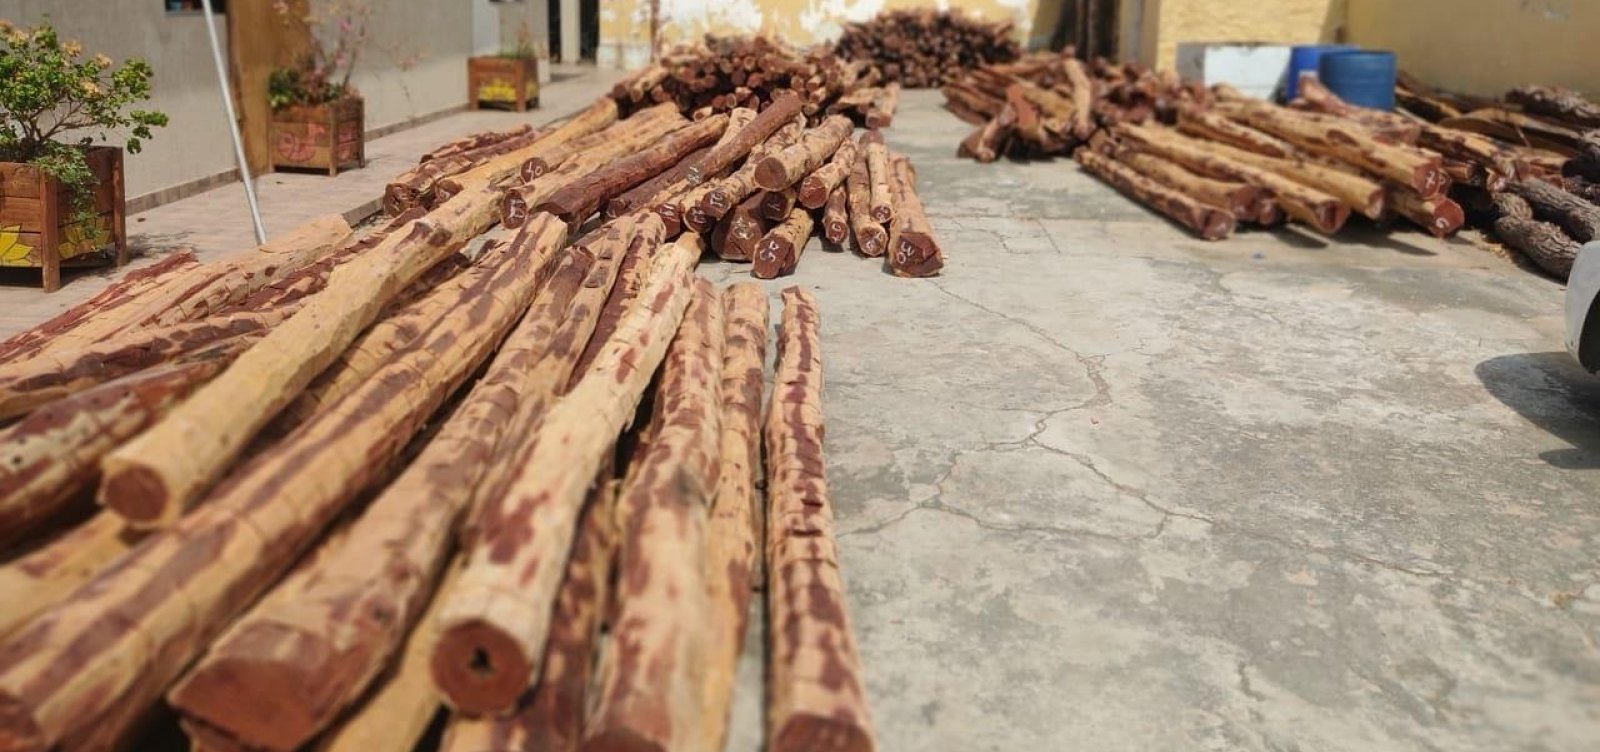 Polícia apreende carga de madeira exótica no valor de R$ 200 mil no interior da Bahia